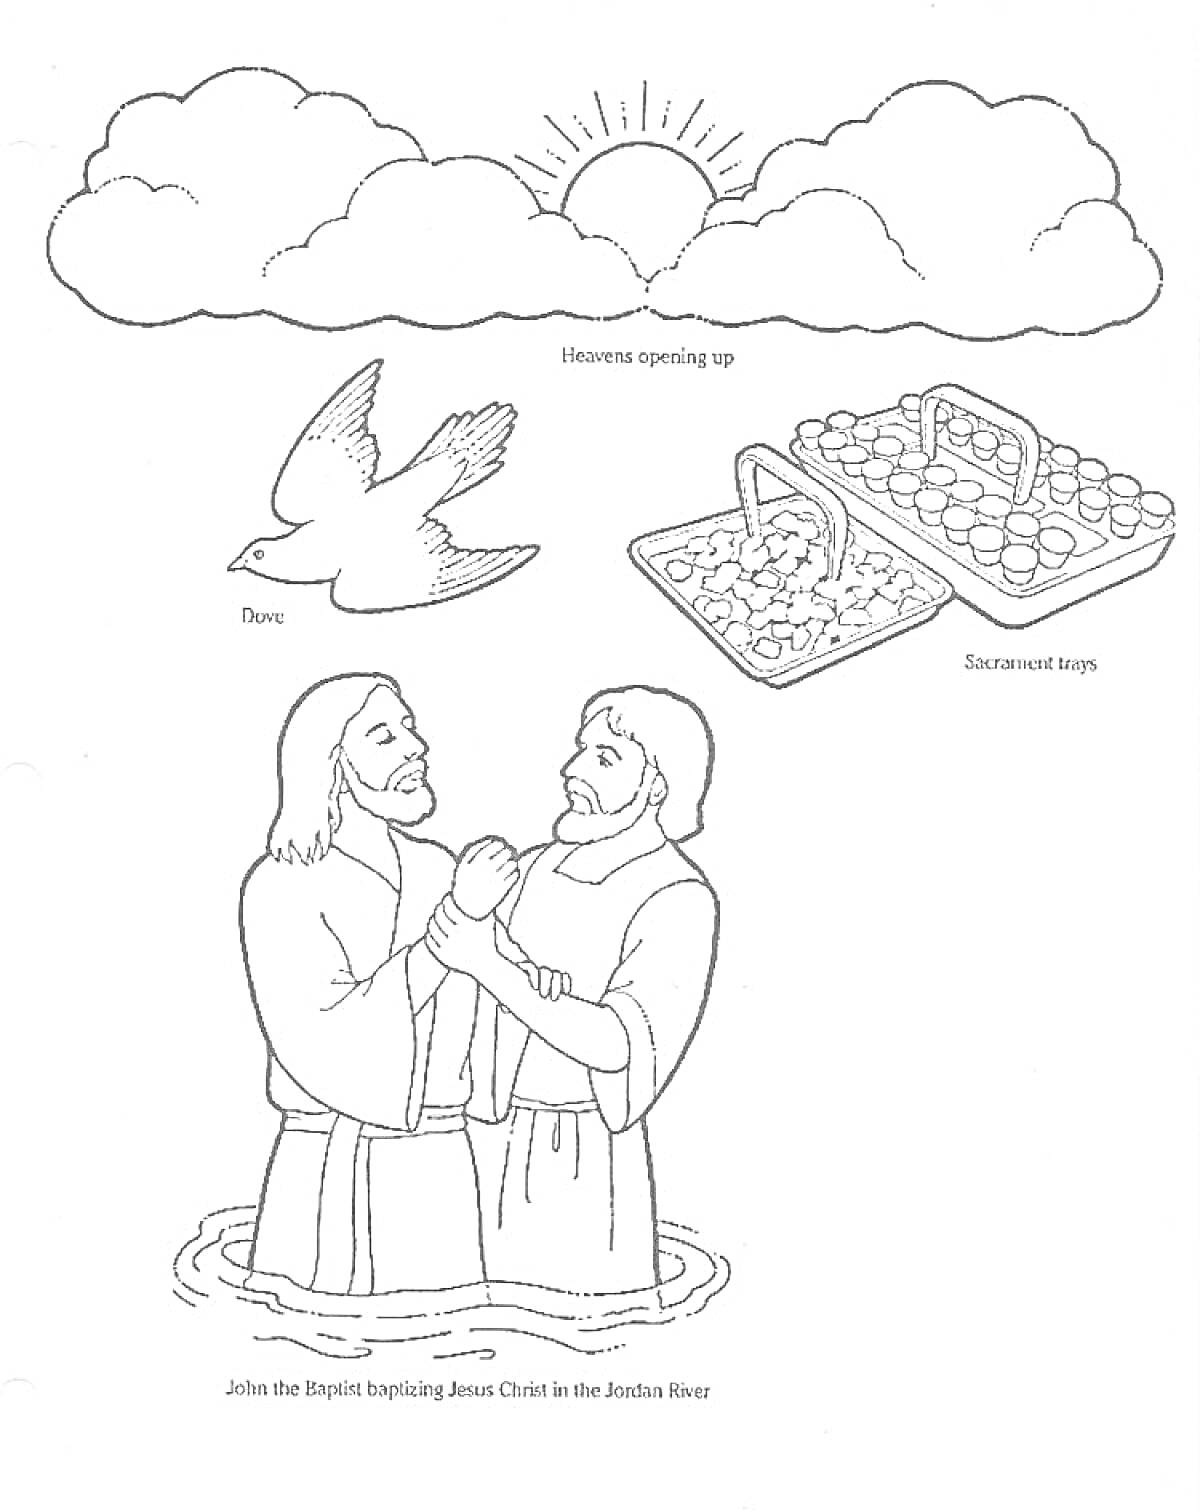 Раскраска Крещение Господне: Иоанн Креститель крестит Иисуса Христа в реке Иордан, небеса раскрываются, голубь, корзины с лепешками